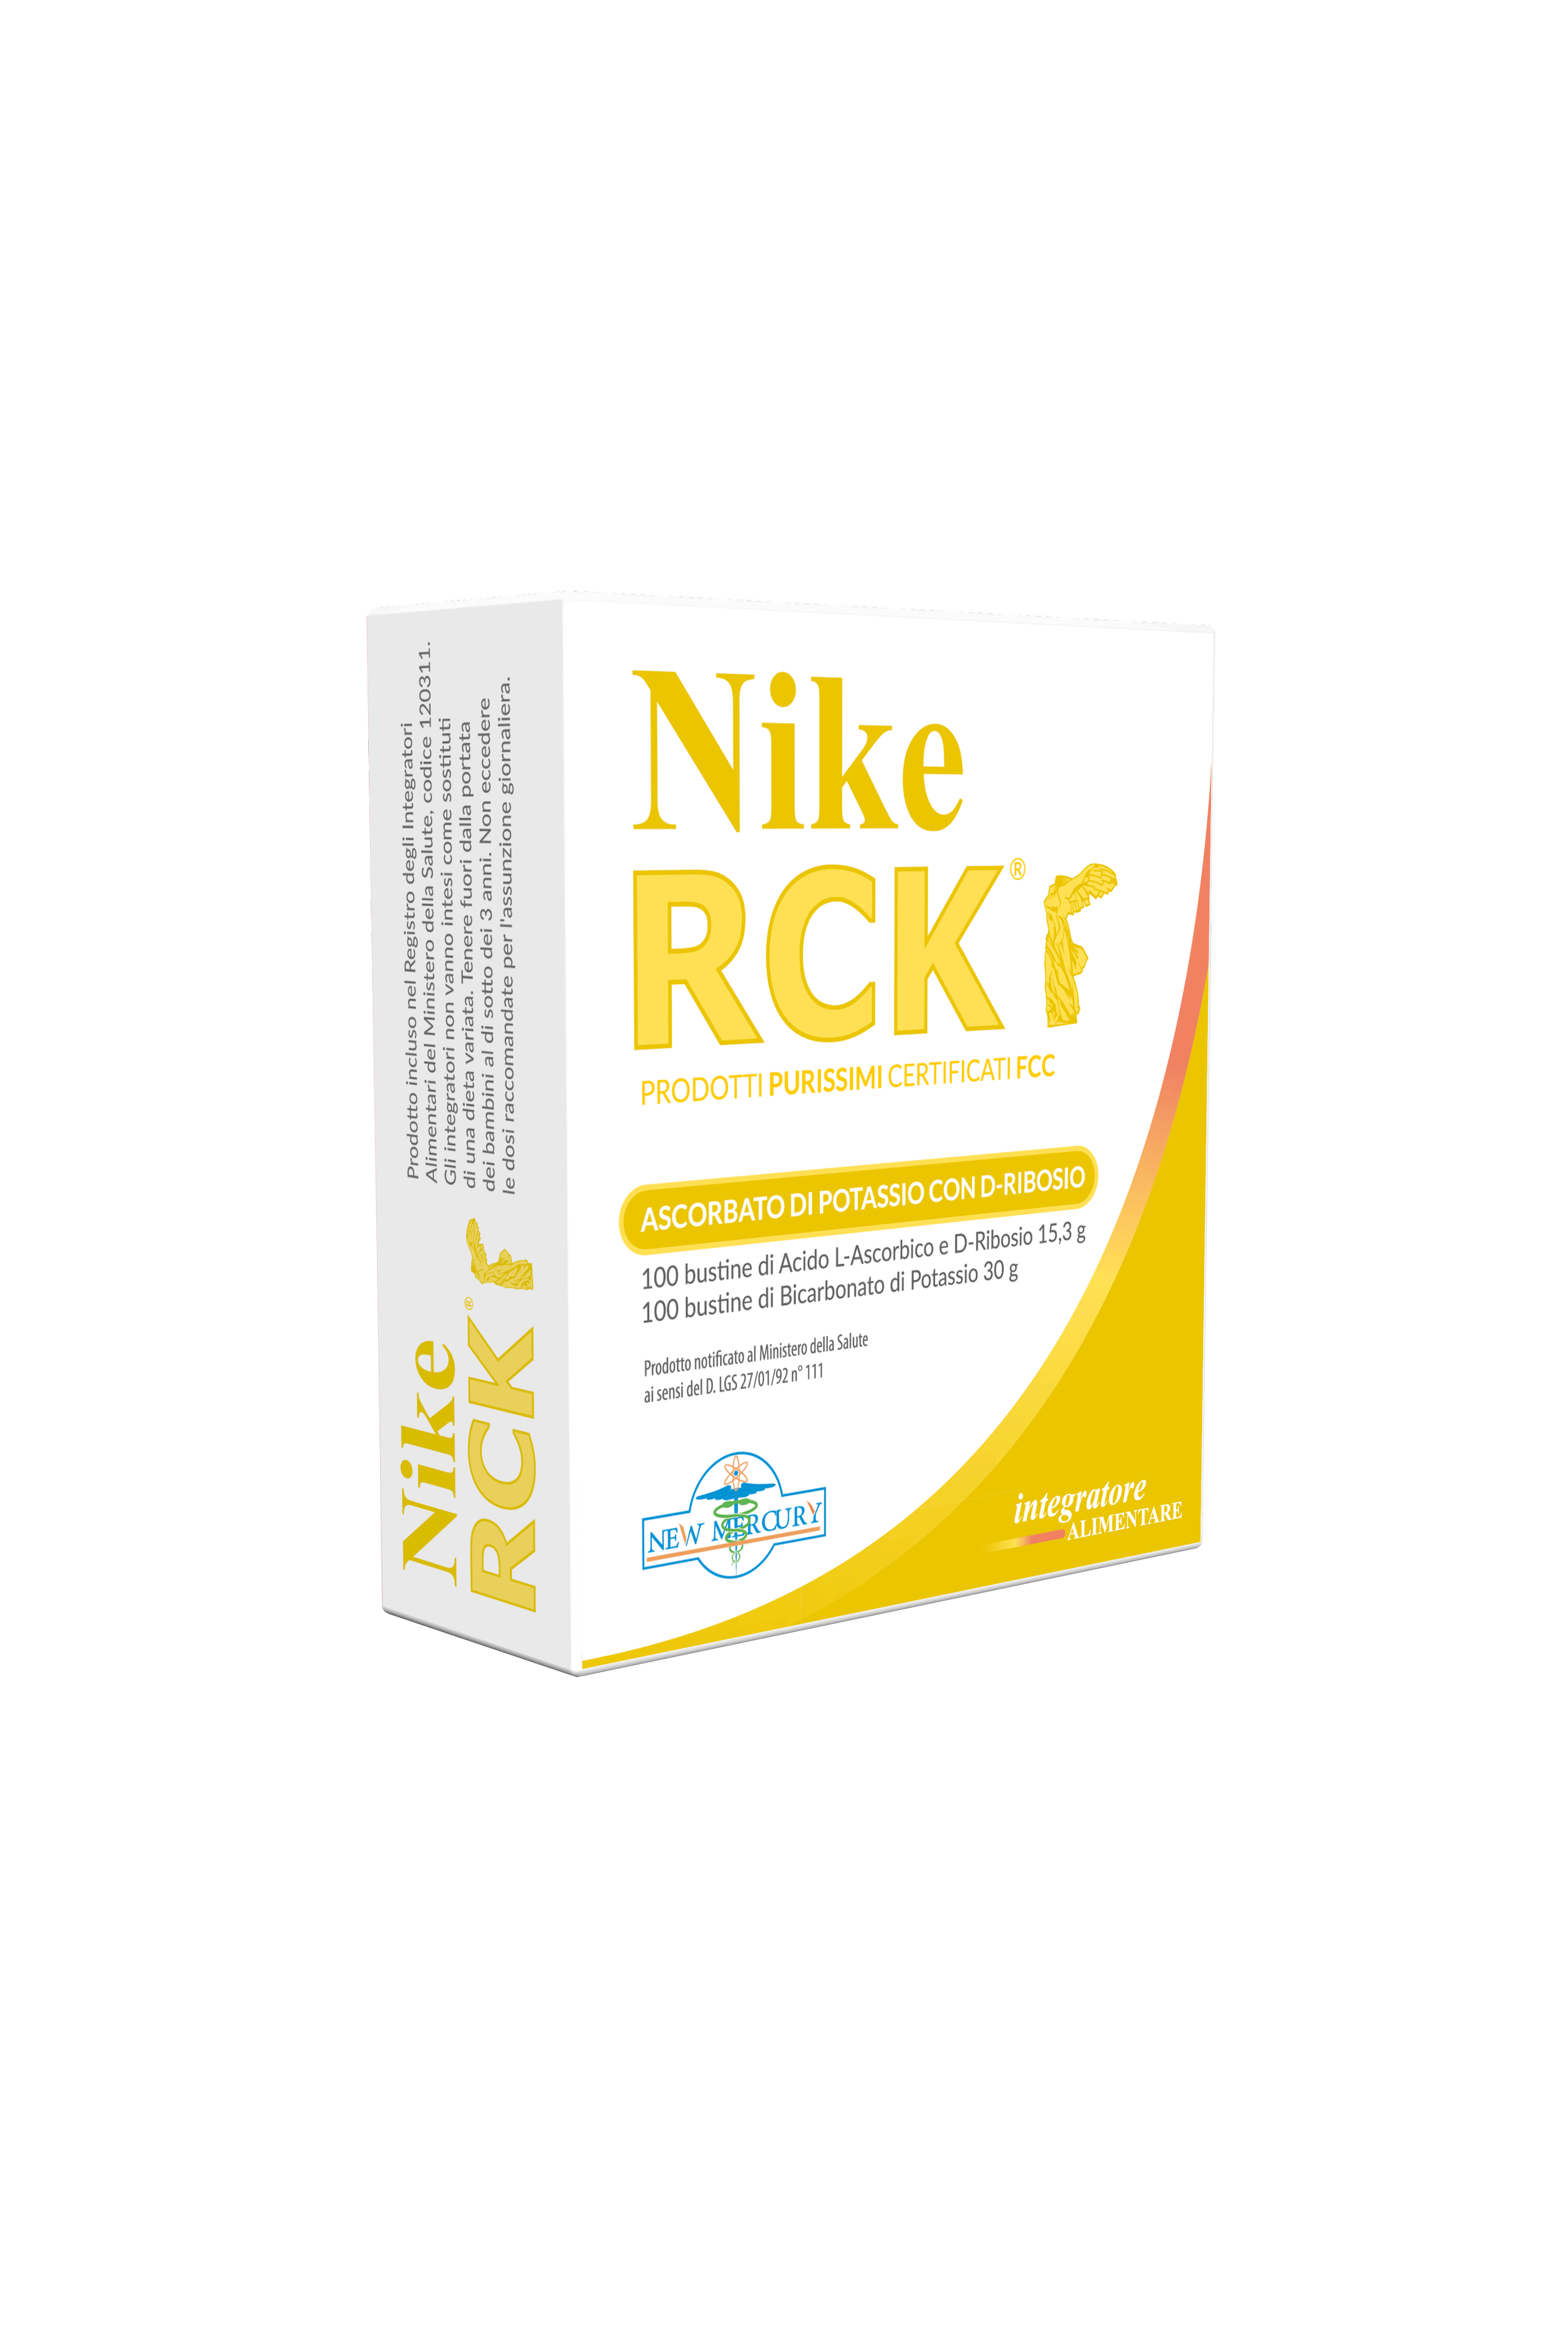 NIKE RCK ® Ascorbato di Potassio D-Ribosio — New Mercury